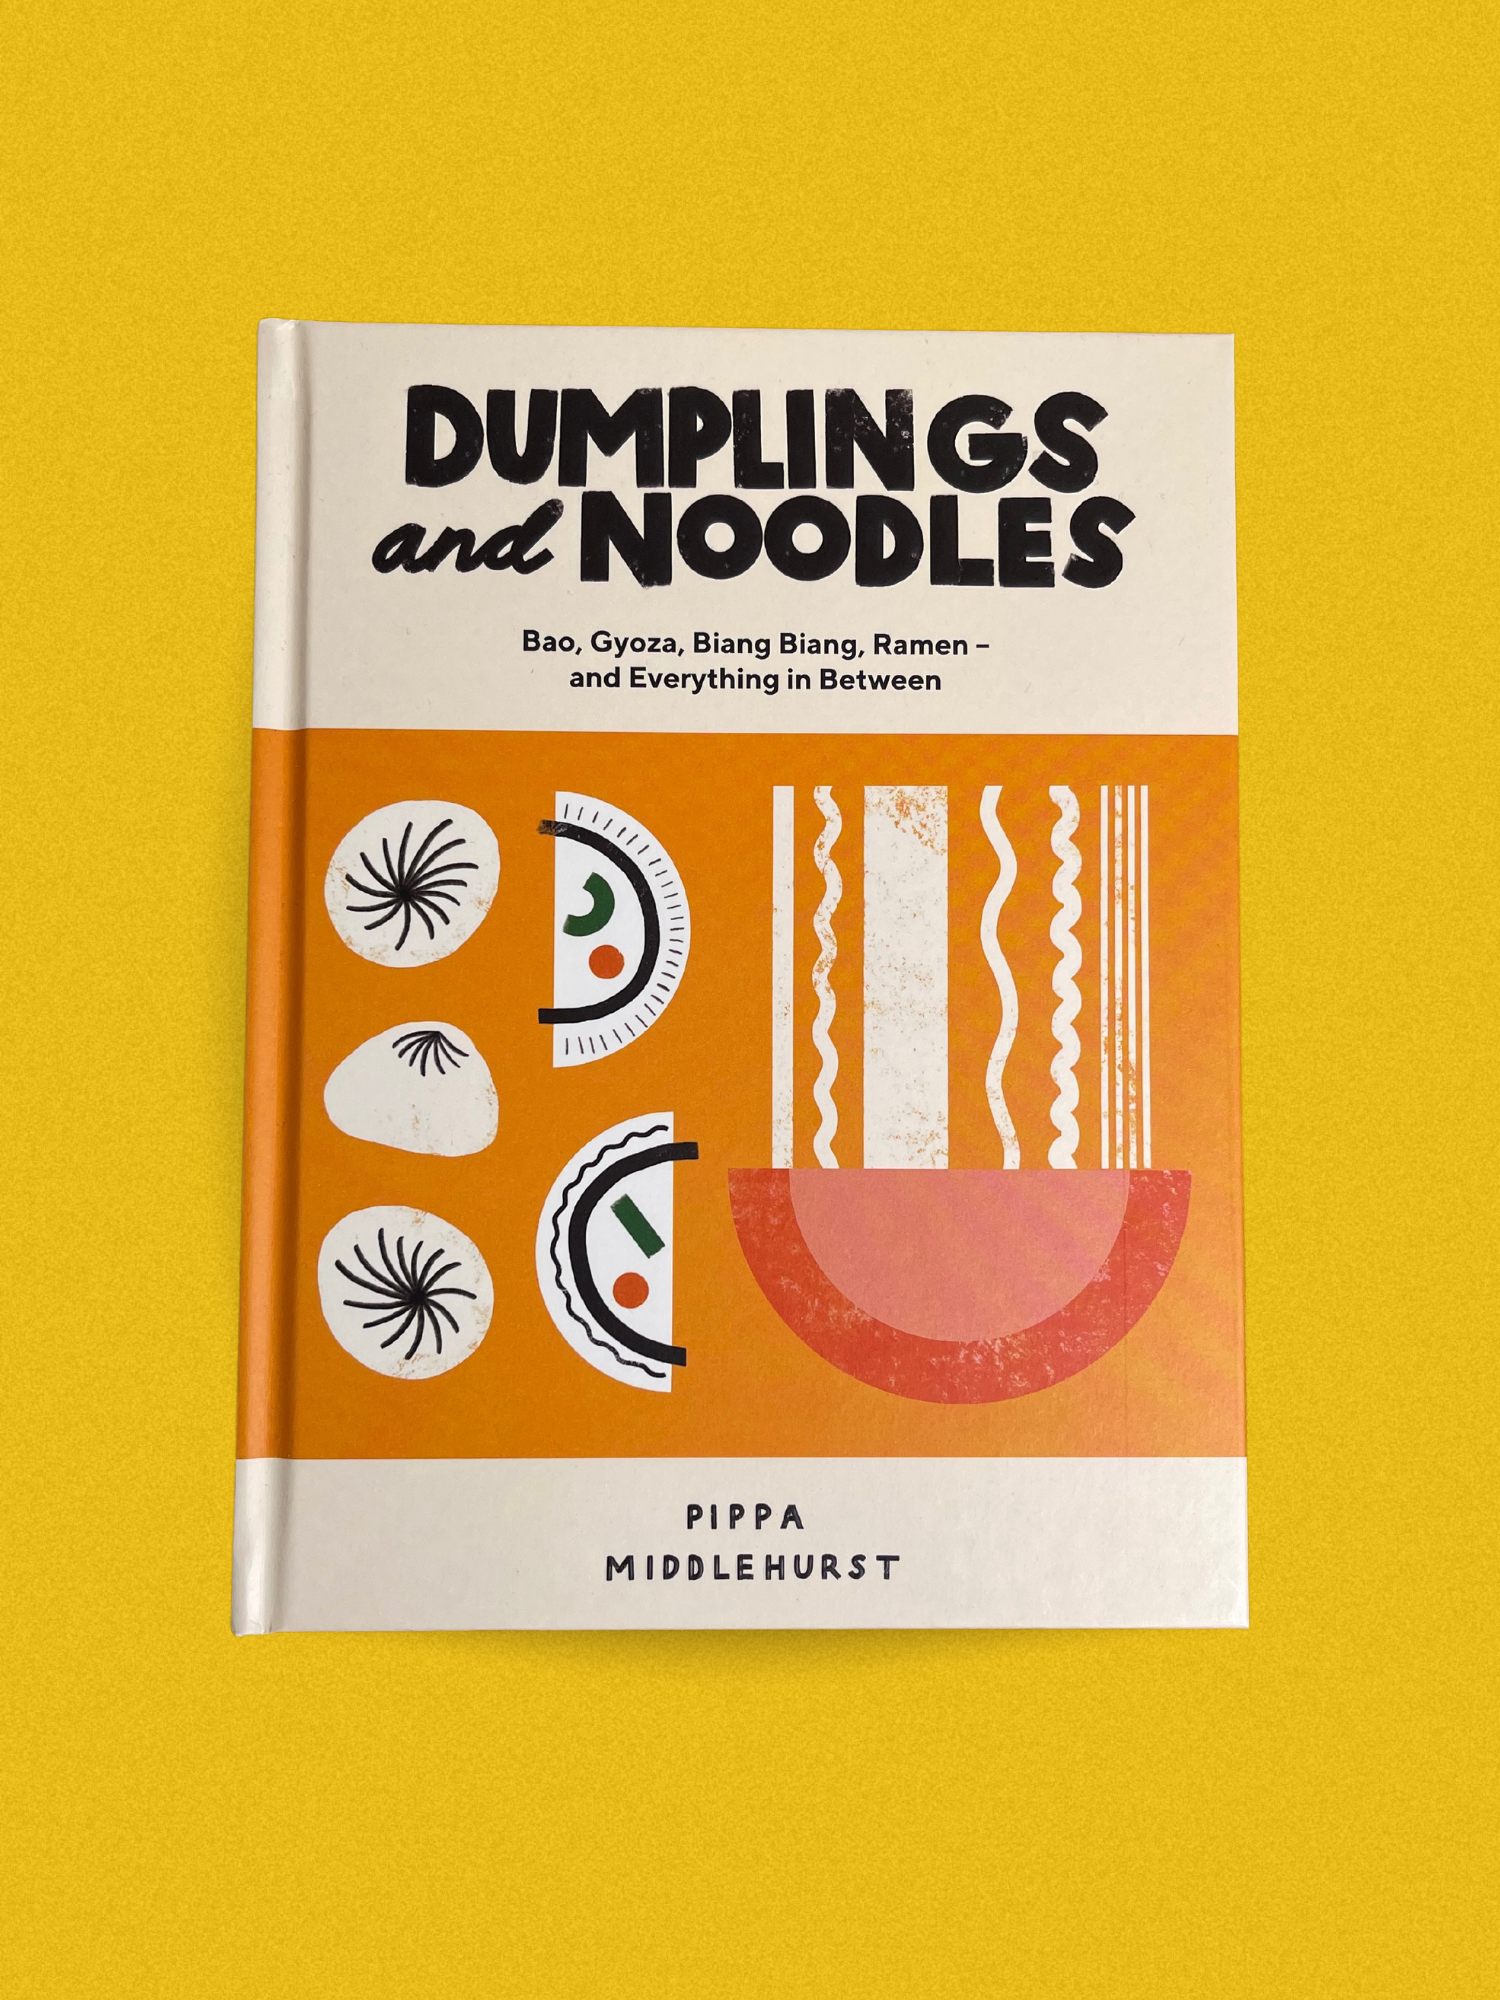 Dumplings + Noodles by Pippa Middlehurst